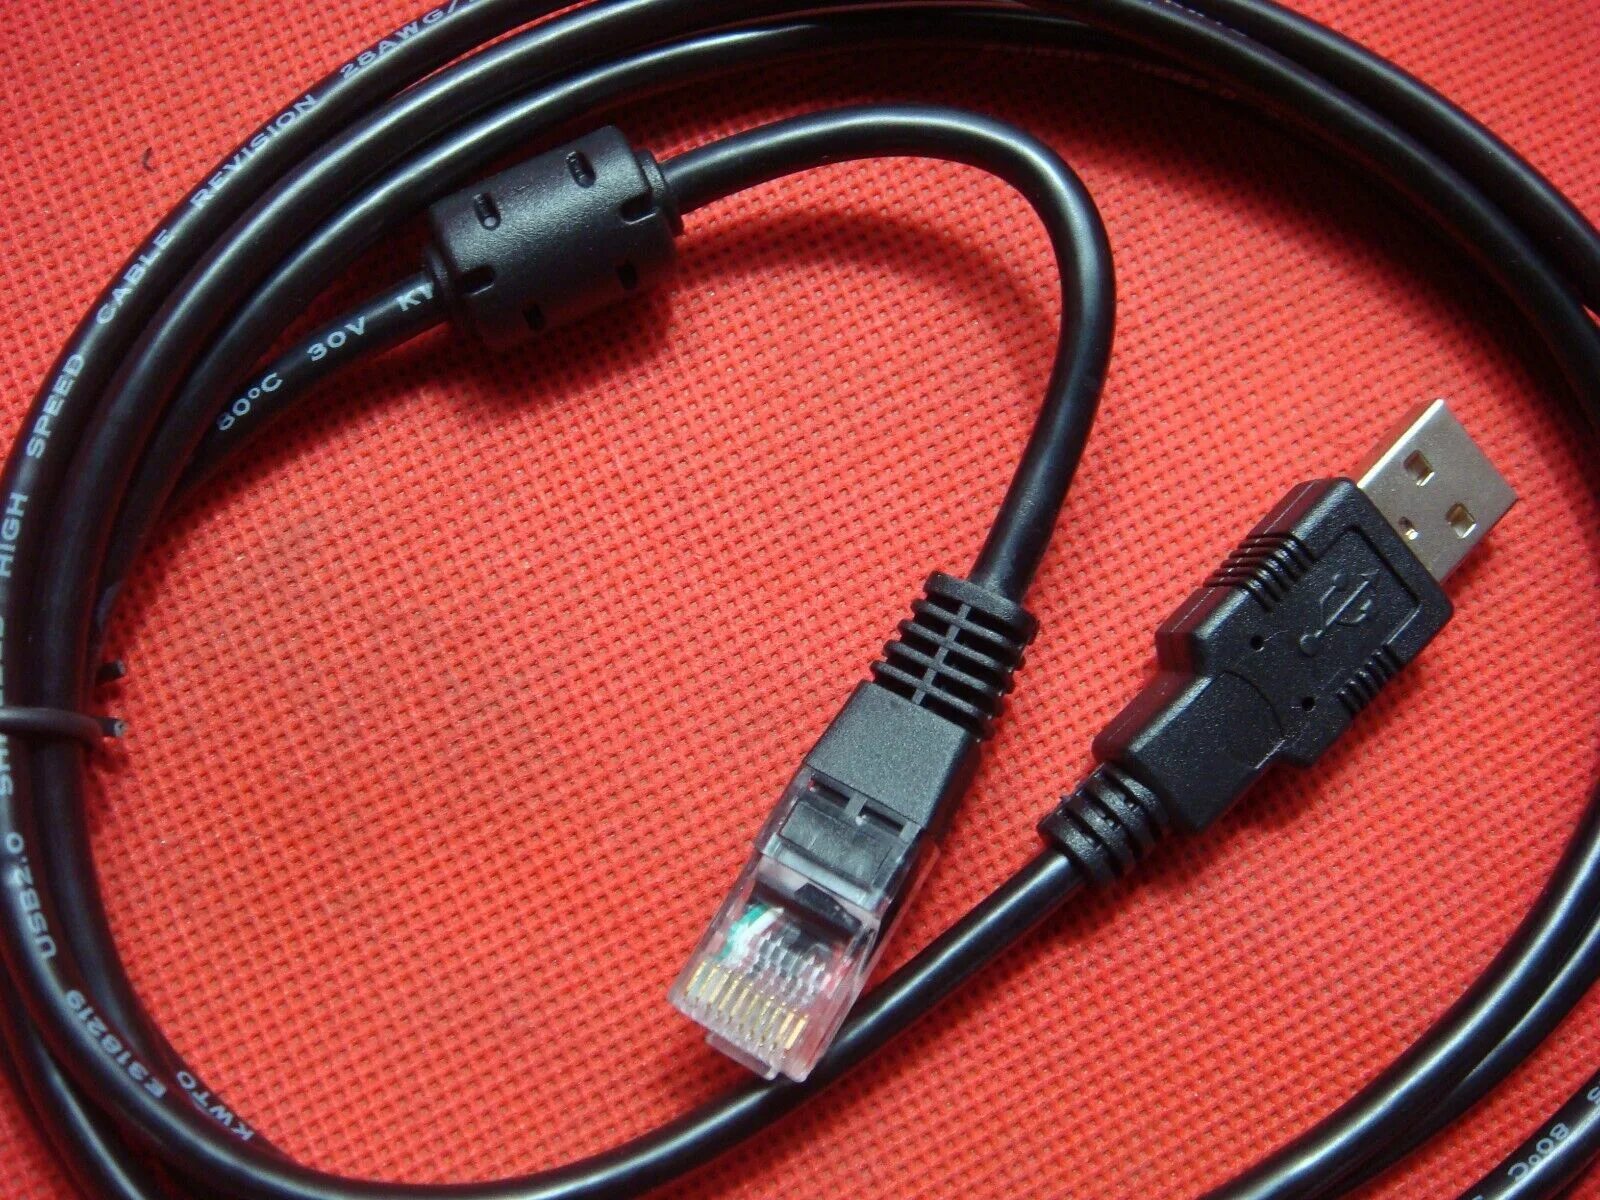 Apc usb rj45 pinout. Кабель APC ap9827. APC es 700 кабель USB. APC ups rj50 – USB. Кабель USB rj50 для ИБП APC.